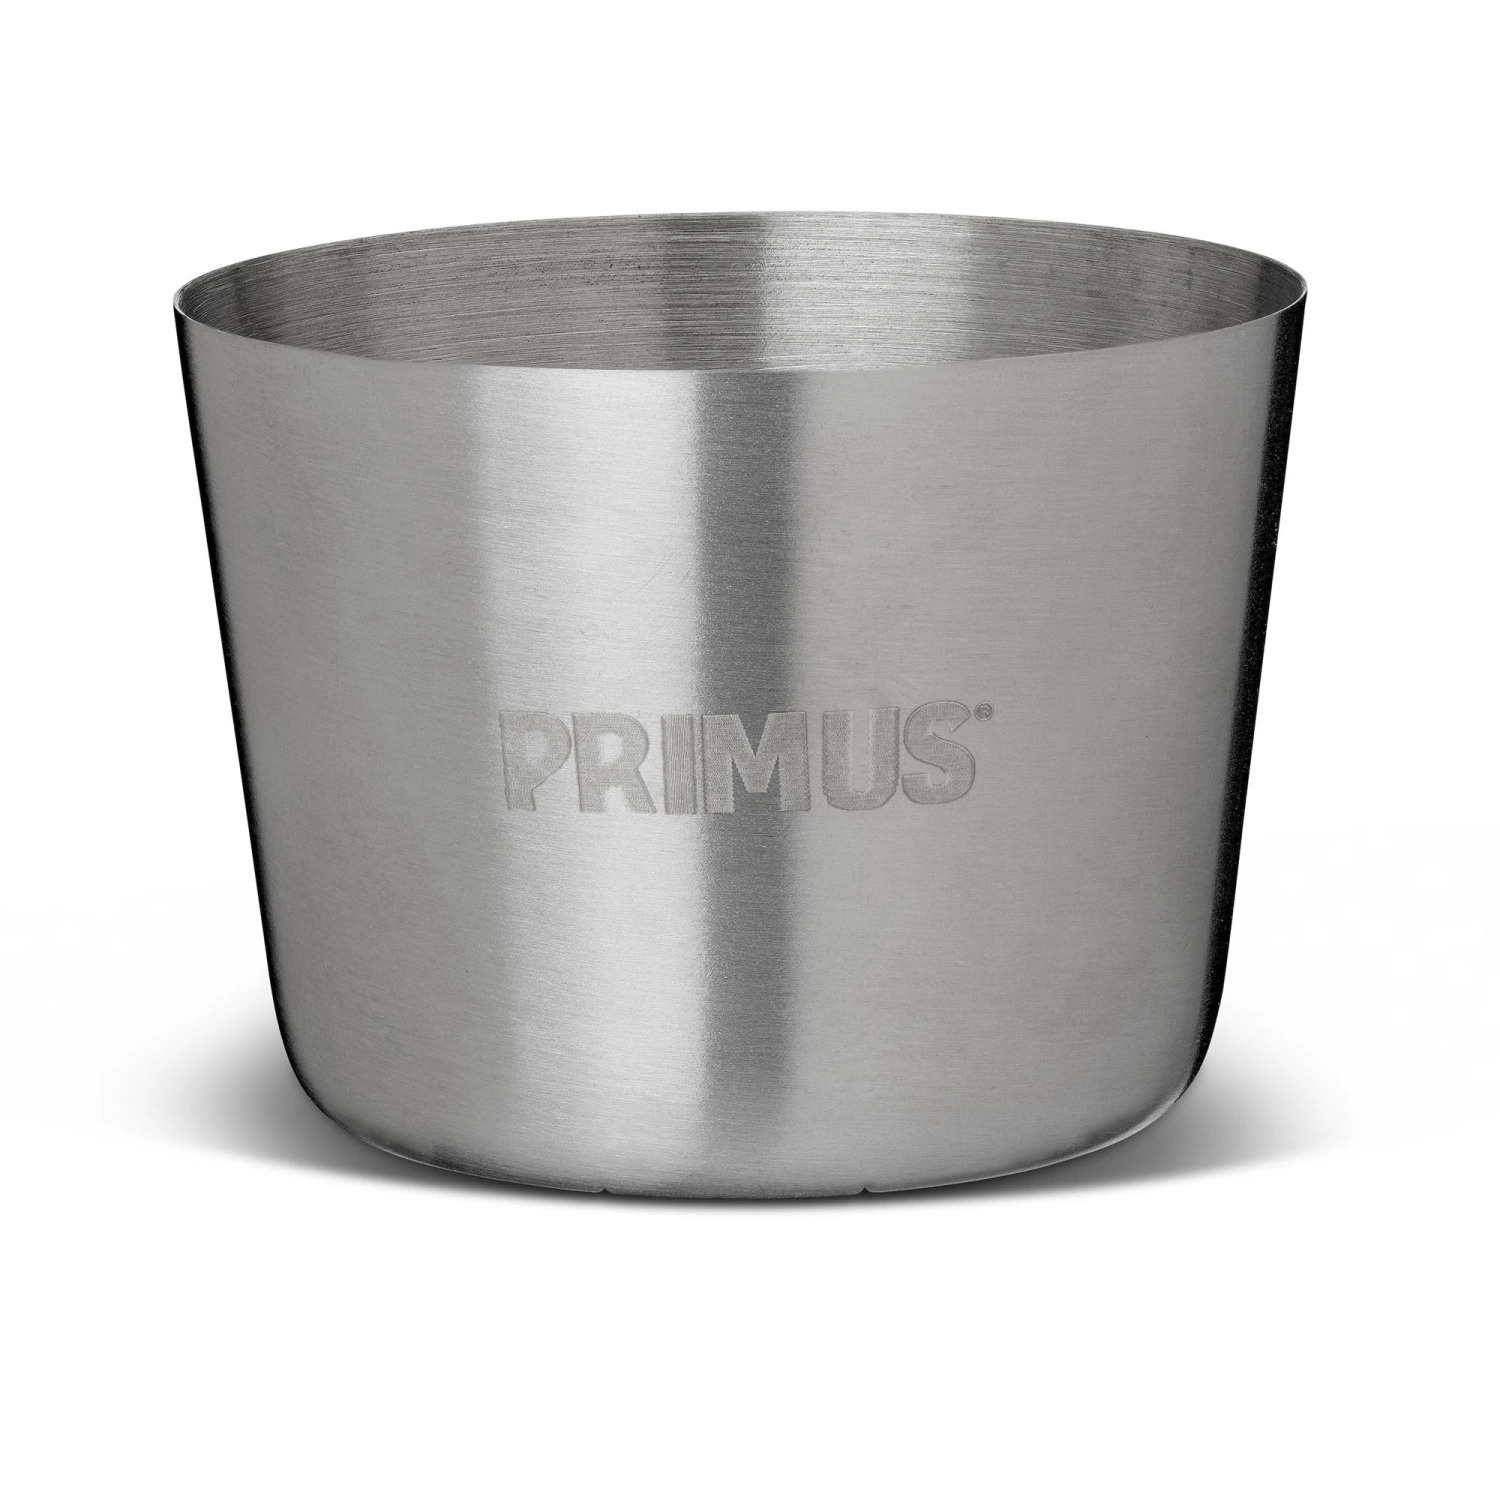 Primus Shot glass S/S 4 pcs